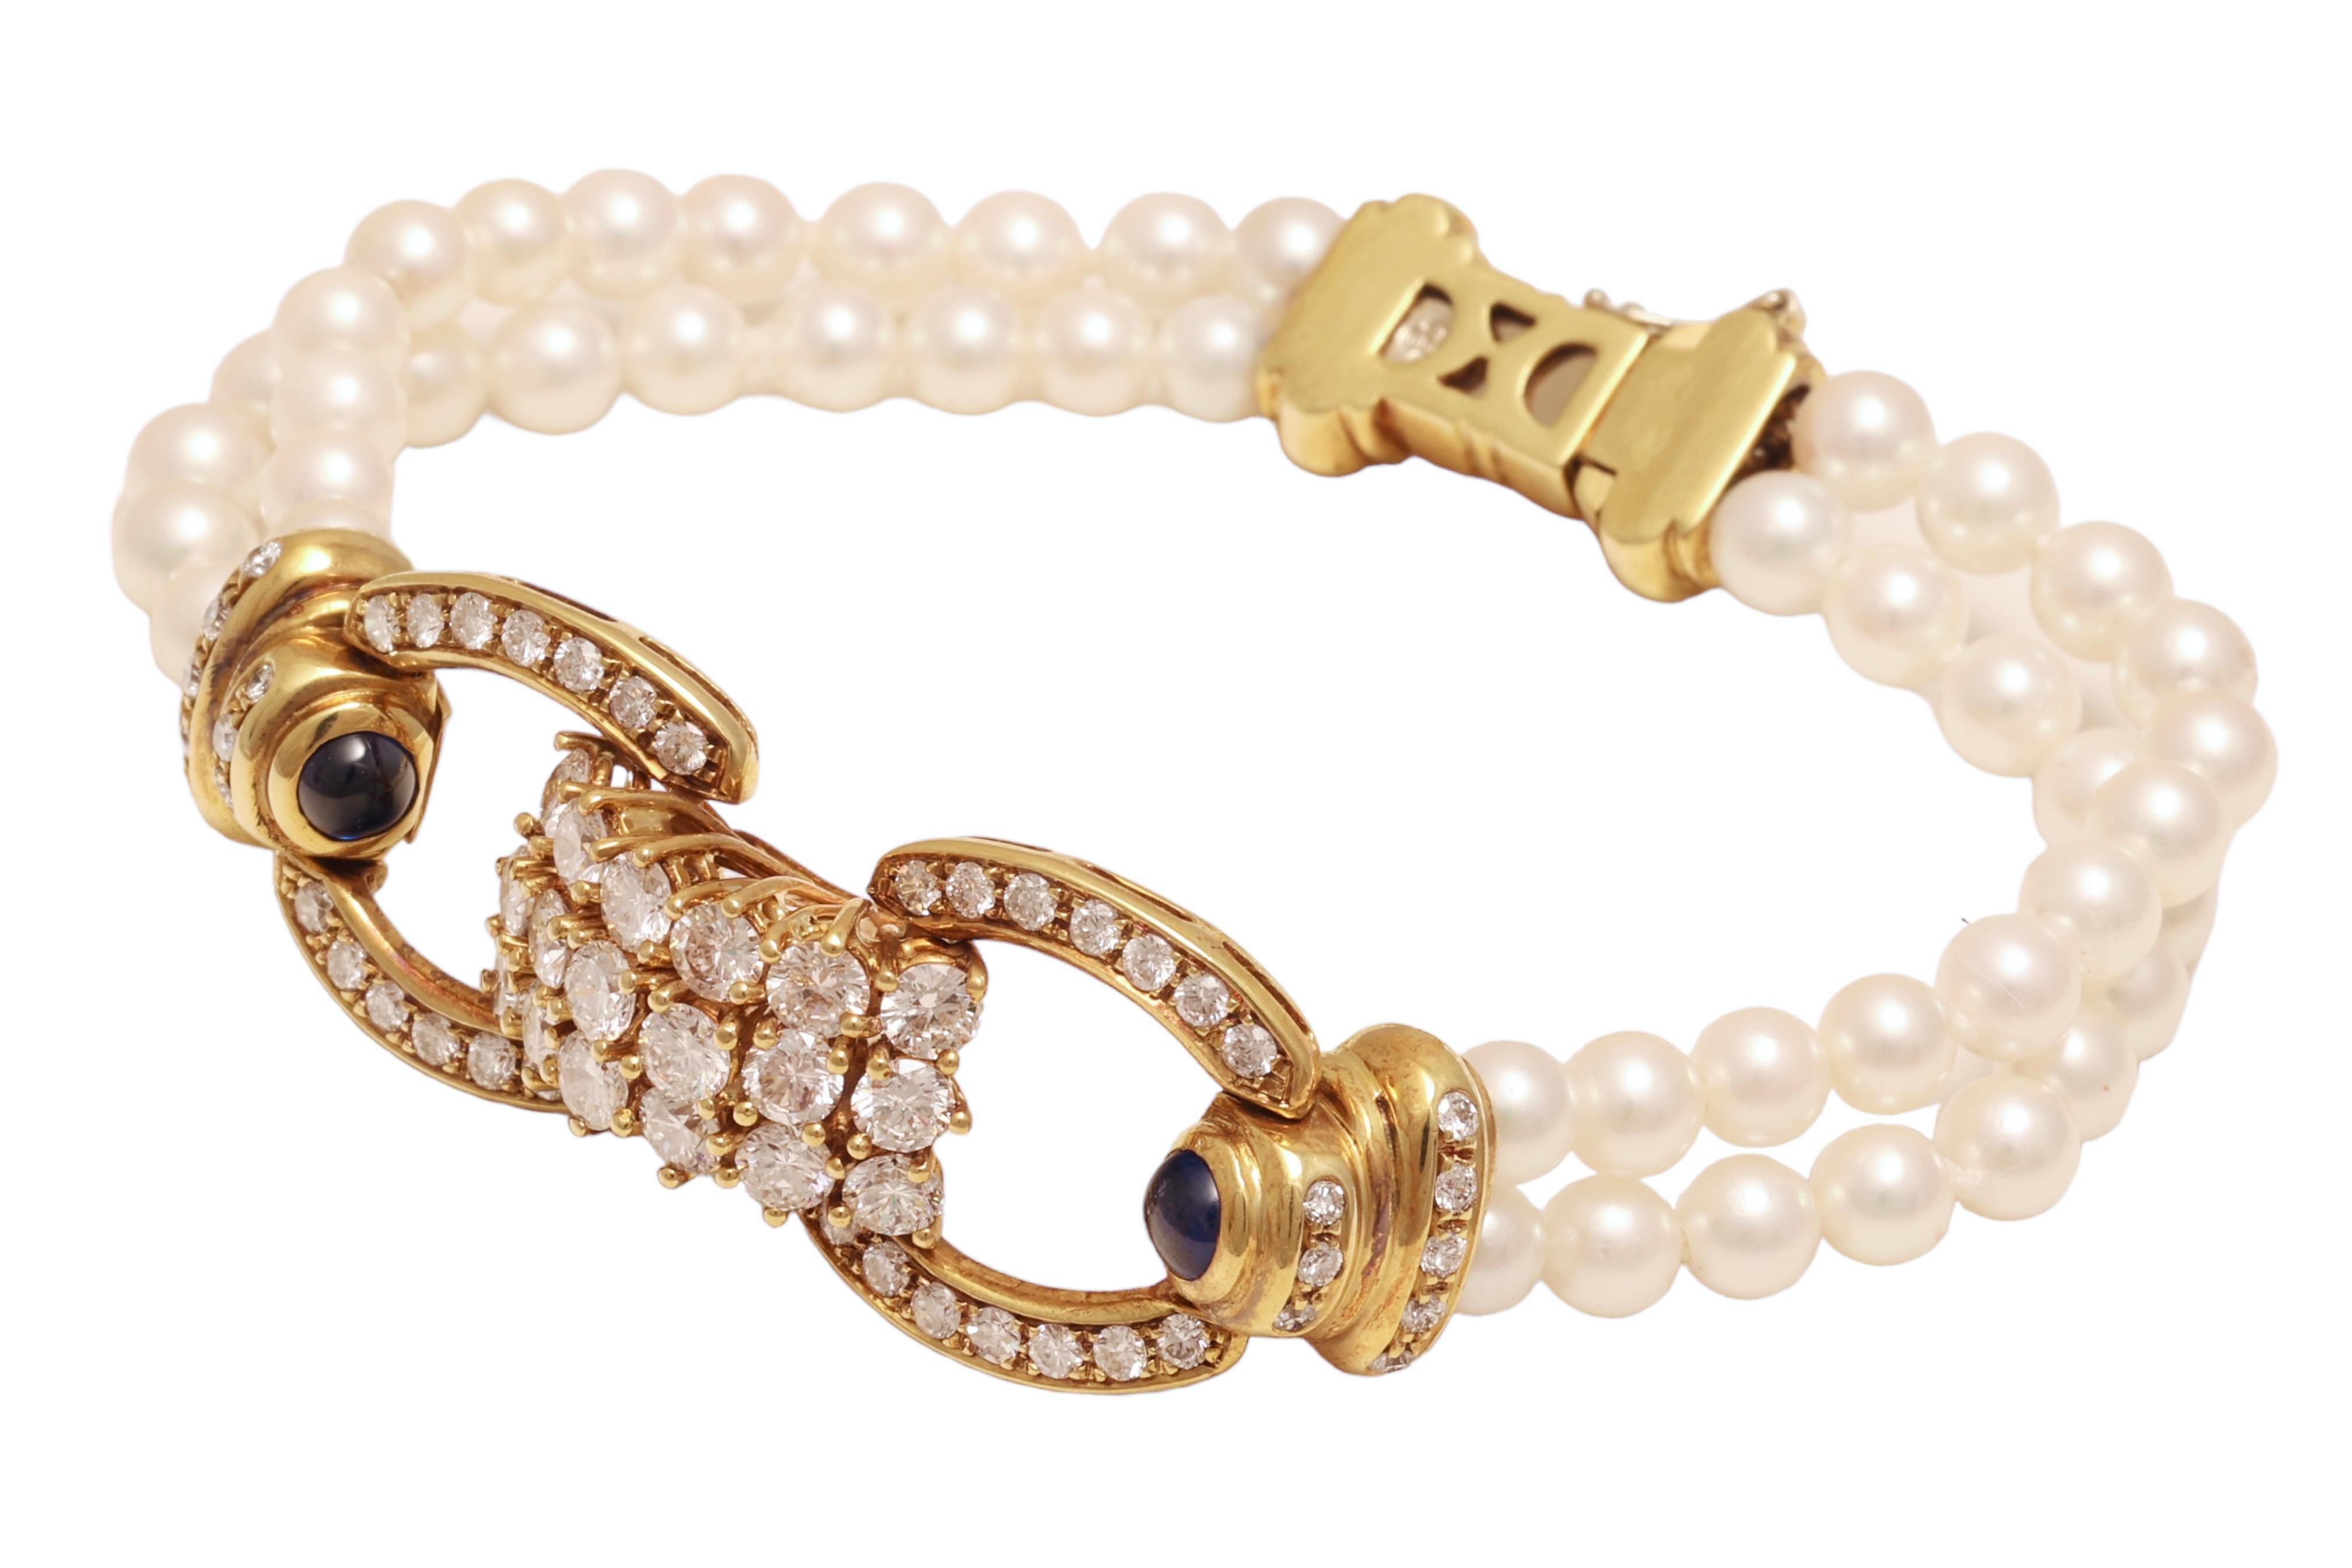 Elegant bracelet de perles en or 18 kt. Or jaune serti de 3.58 ct. Diamants, perles et saphirs

Diamants : Diamants taillés en brillant, ensemble d'environ 3.58 ct.

Perles : 48 perles, diamètre 4,5 mm par perle

Saphirs : 2 saphirs cabochons bleus